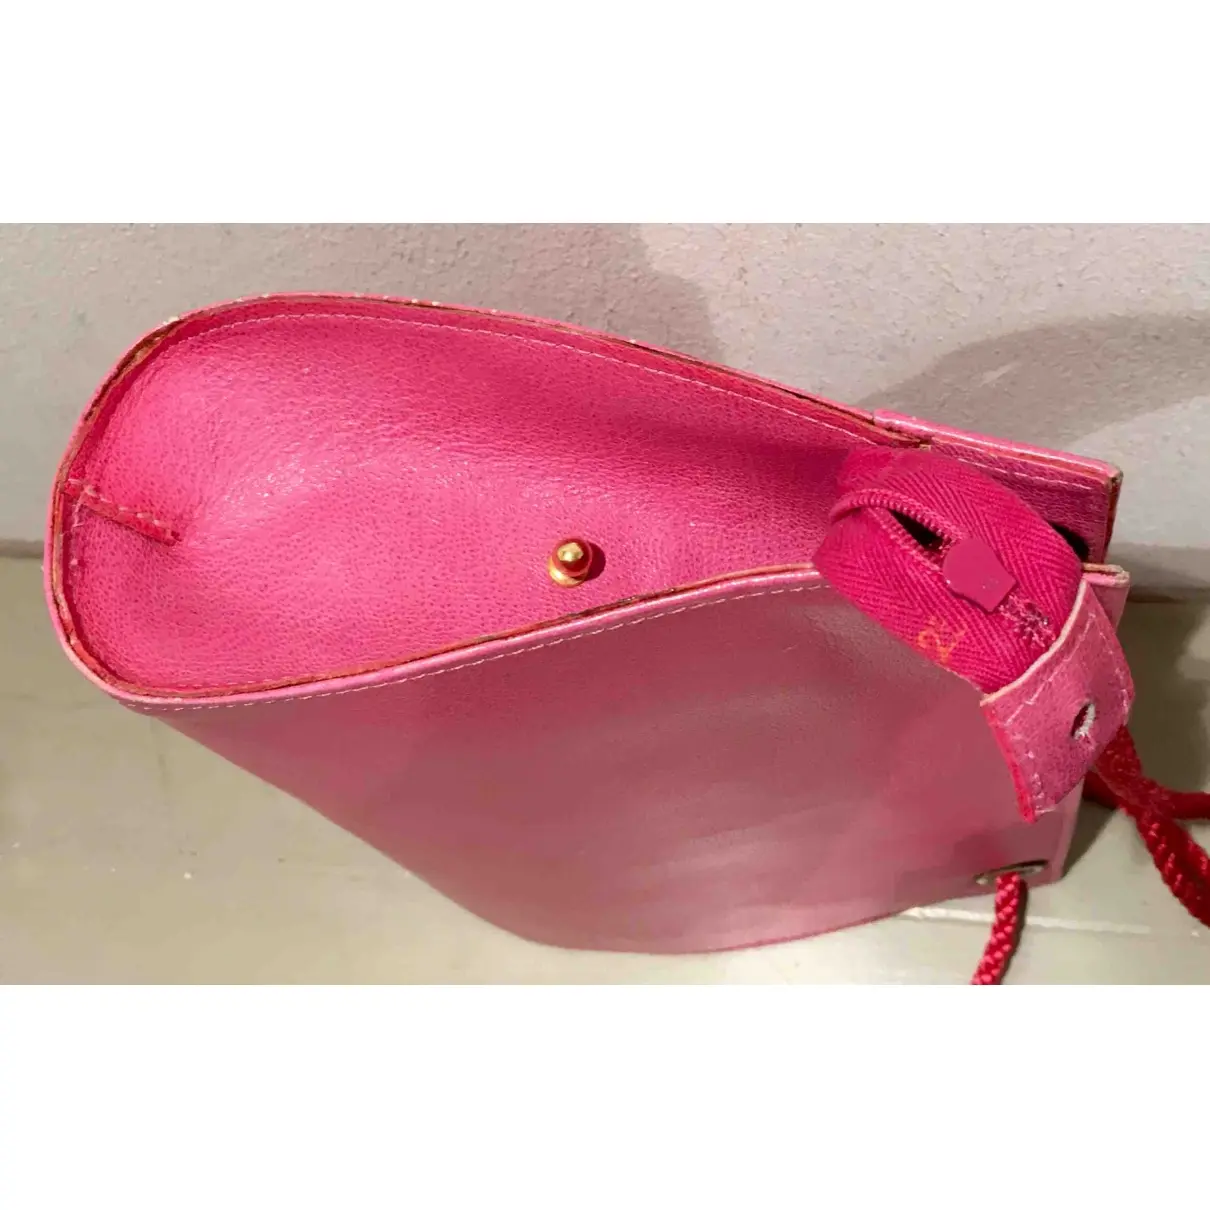 Pierre Cardin Leather handbag for sale - Vintage